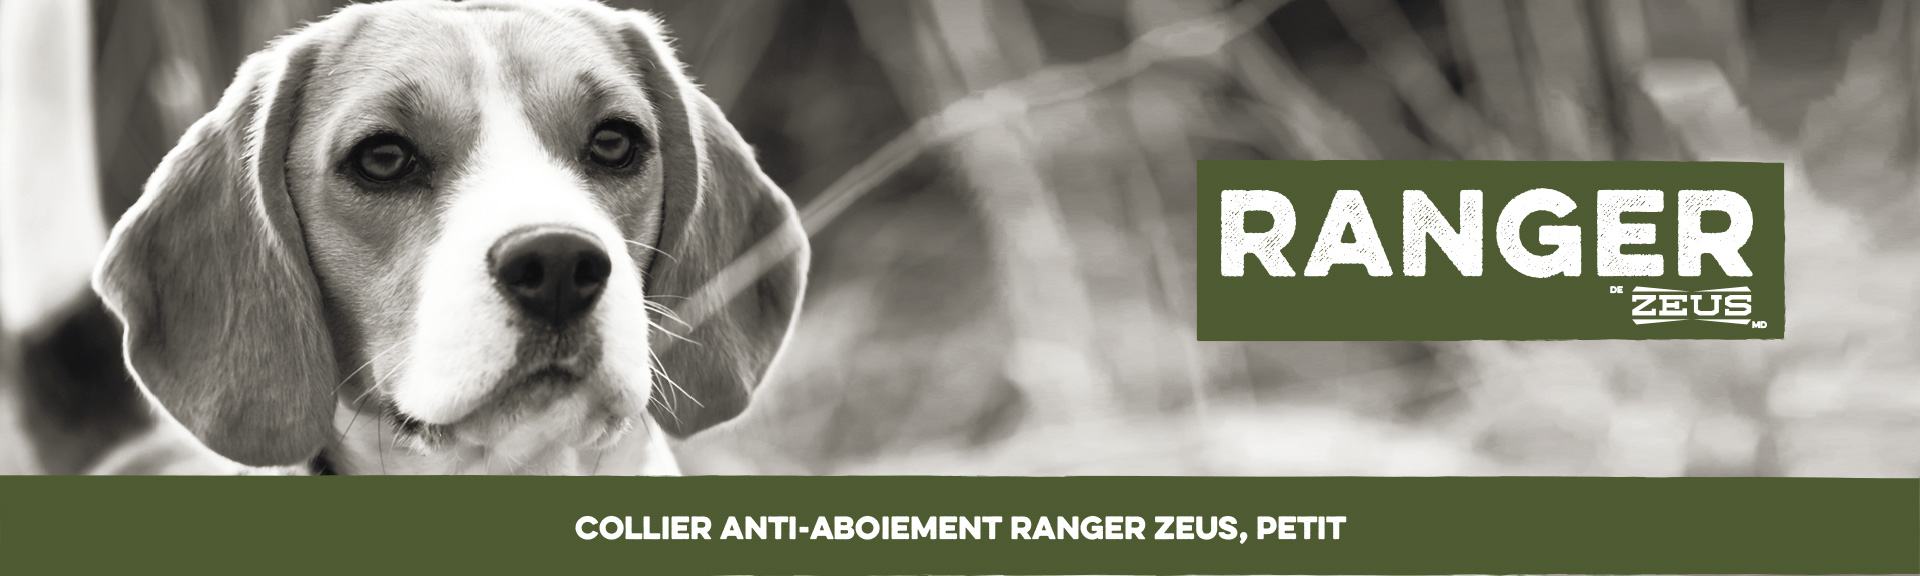 Le Collier anti-aboiement Ranger Zeus pour chiens de petite taille